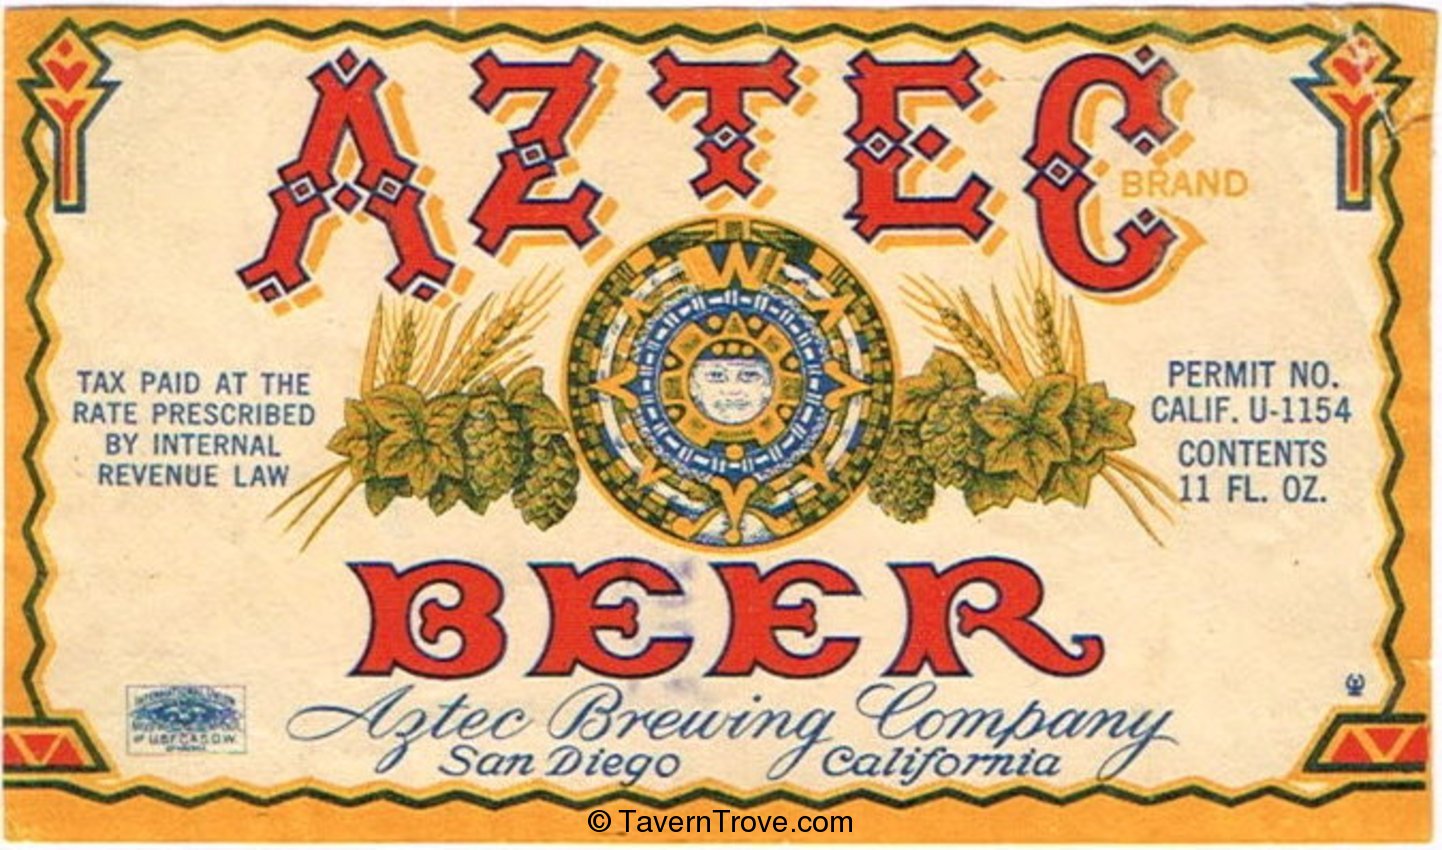 Aztec Beer